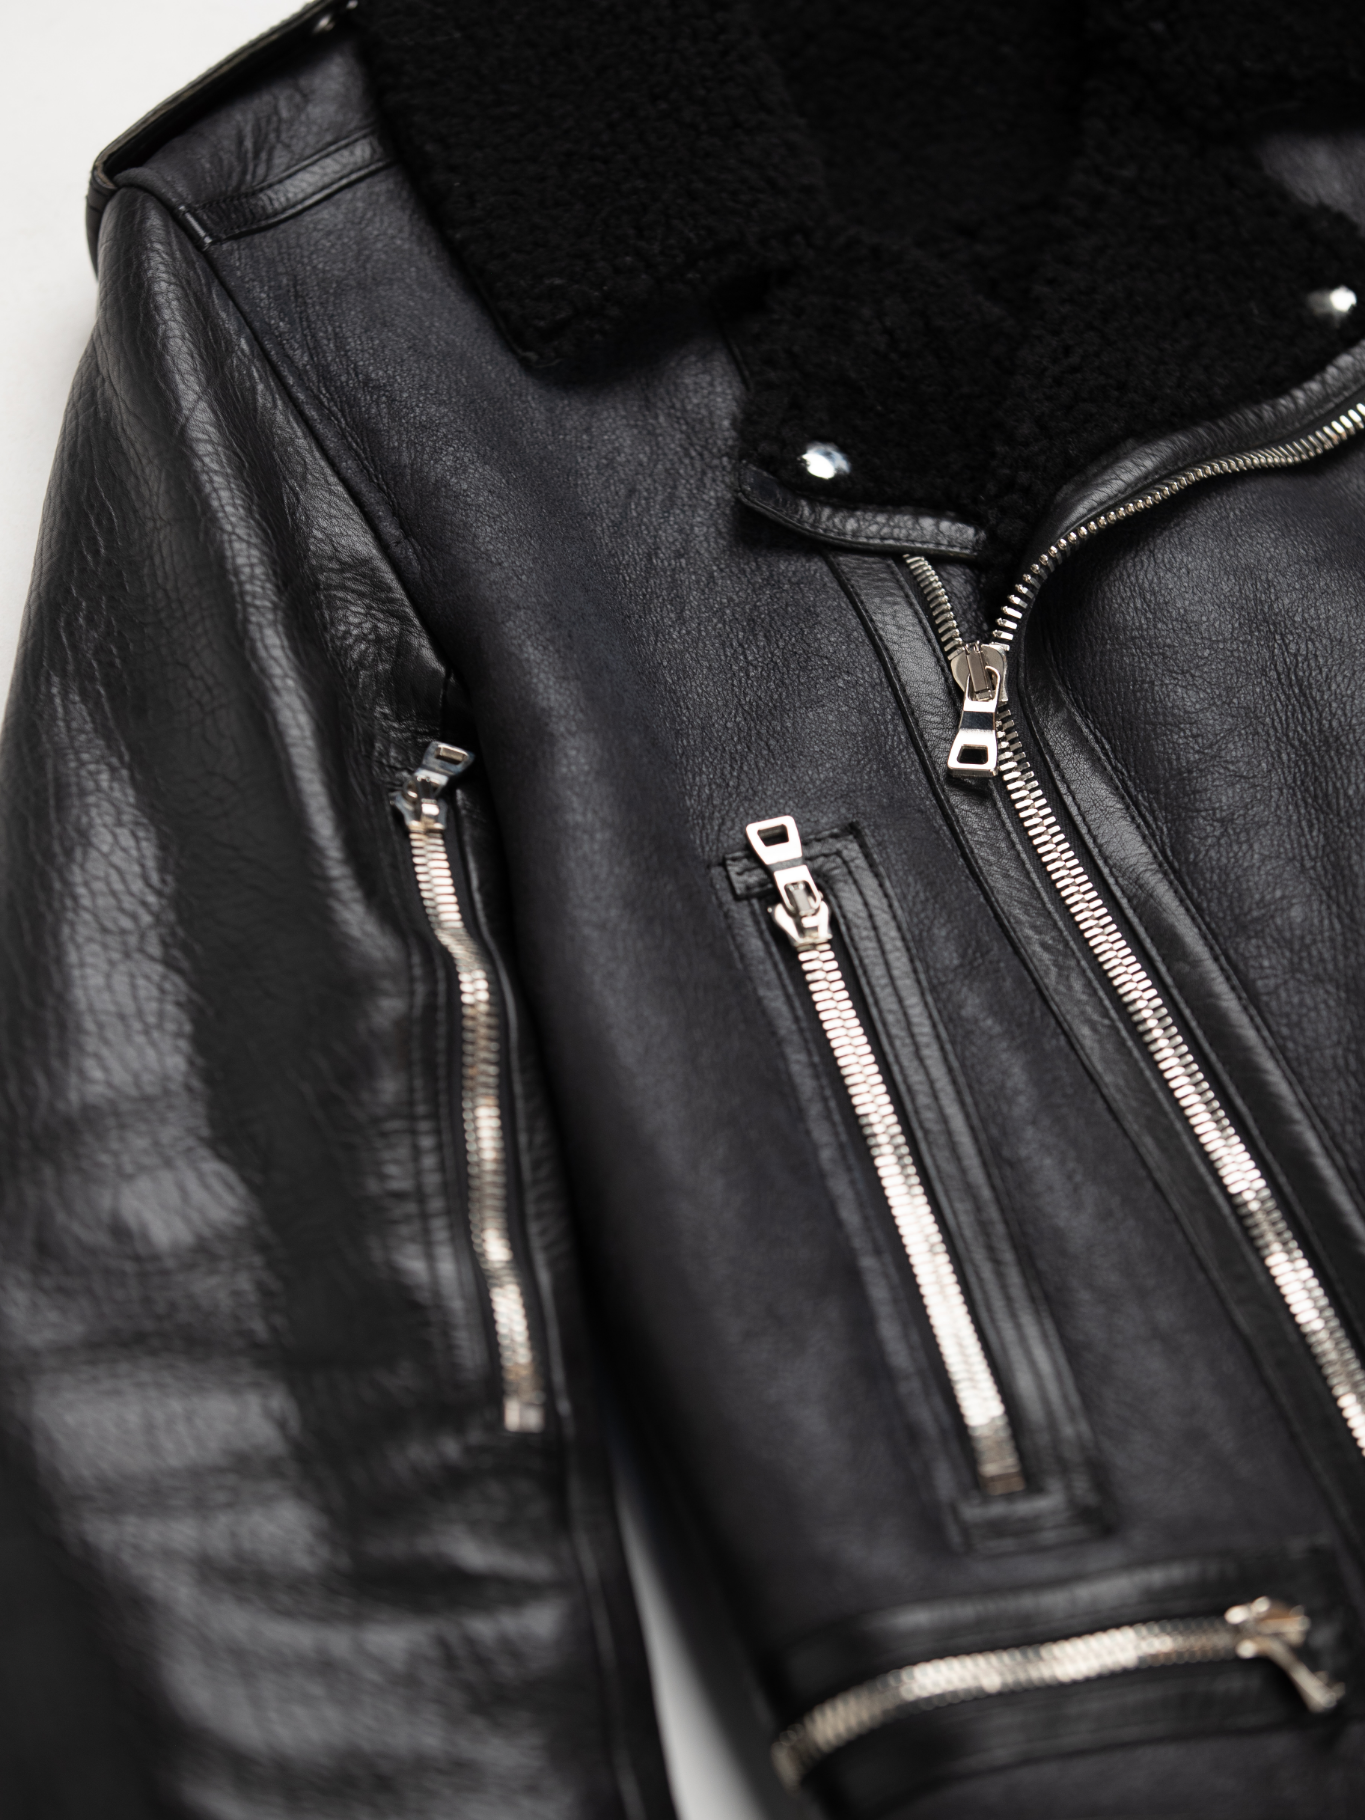 Black Shearling Leather Biker Jacket